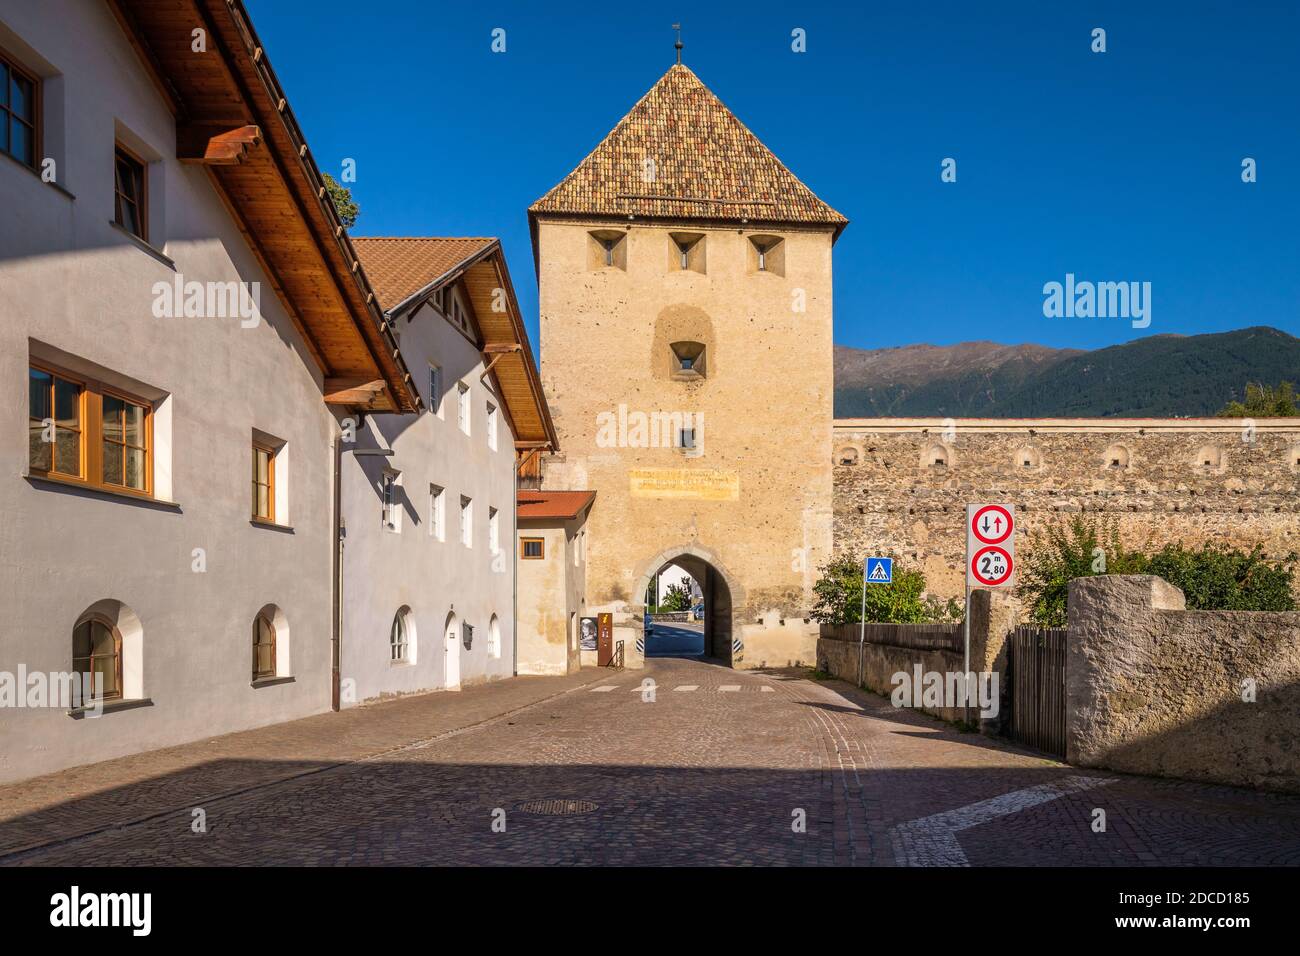 Glorenza, Italia - 18 de septiembre de 2019: Una calle conduce hacia una de las puertas de la torre en el pueblo de Glorenza (Val Venosta, Alto Adige, Italia) Foto de stock